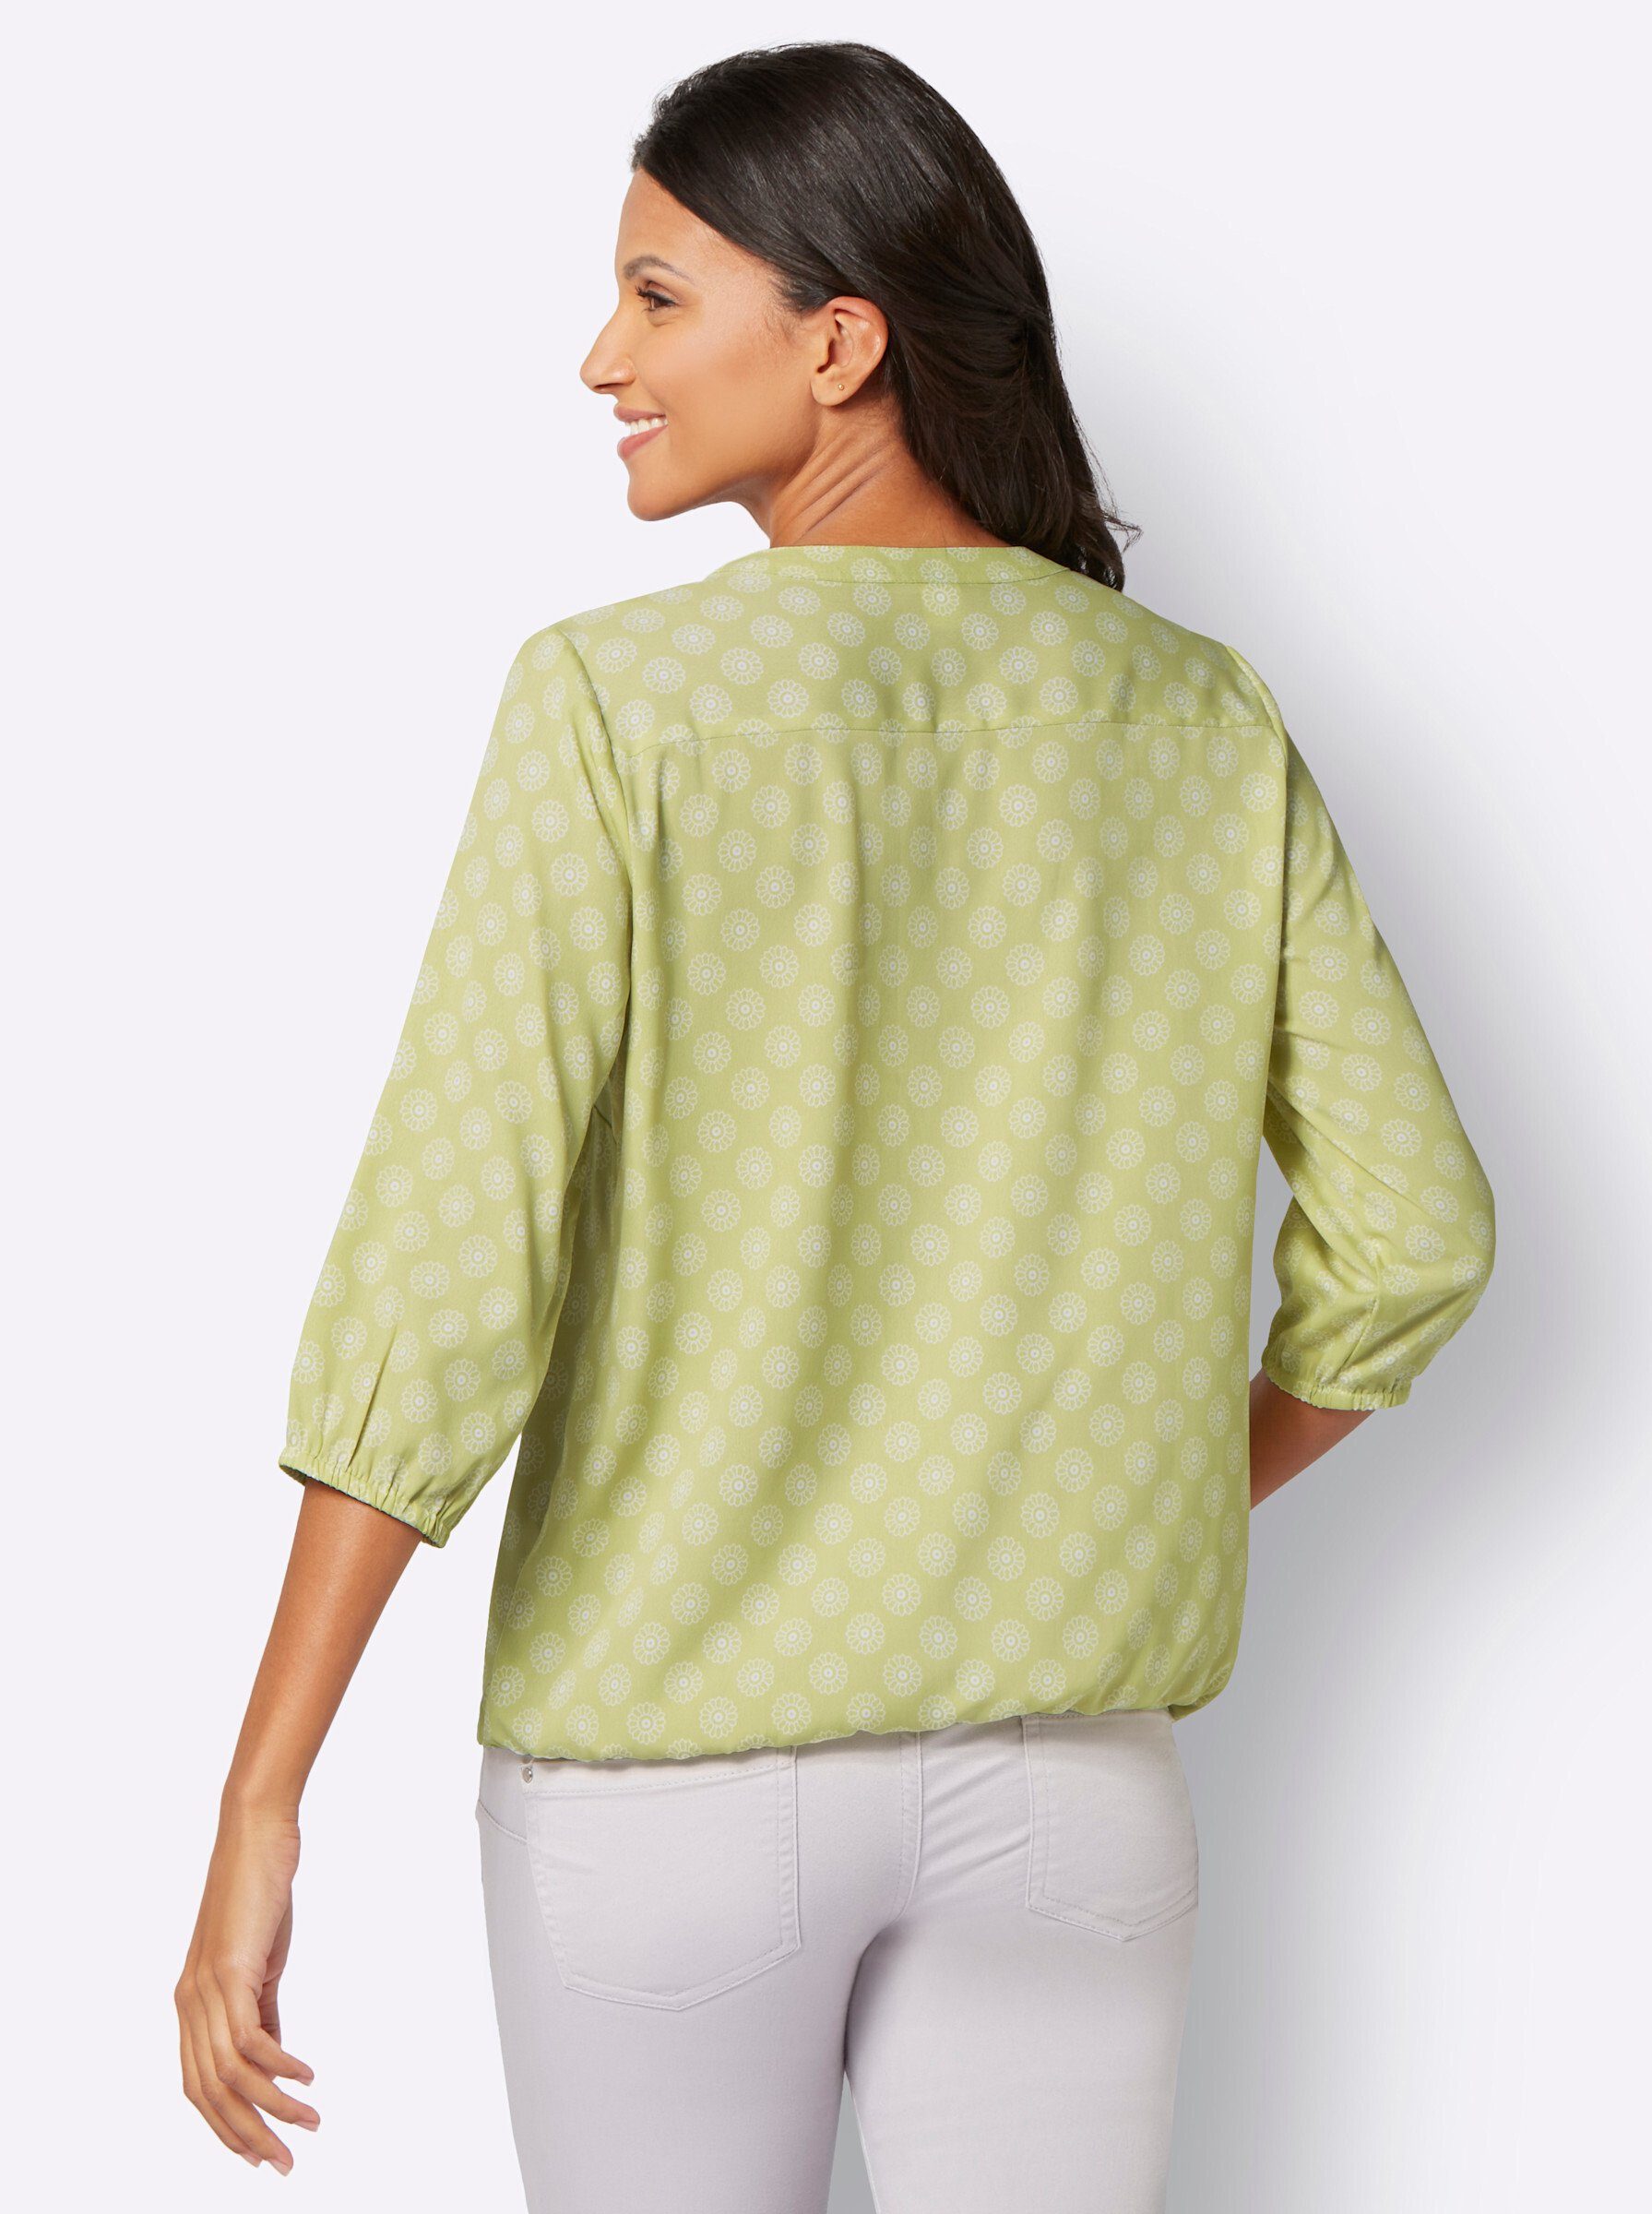 Sieh Klassische lindgrün-ecru-bedruckt Bluse an!